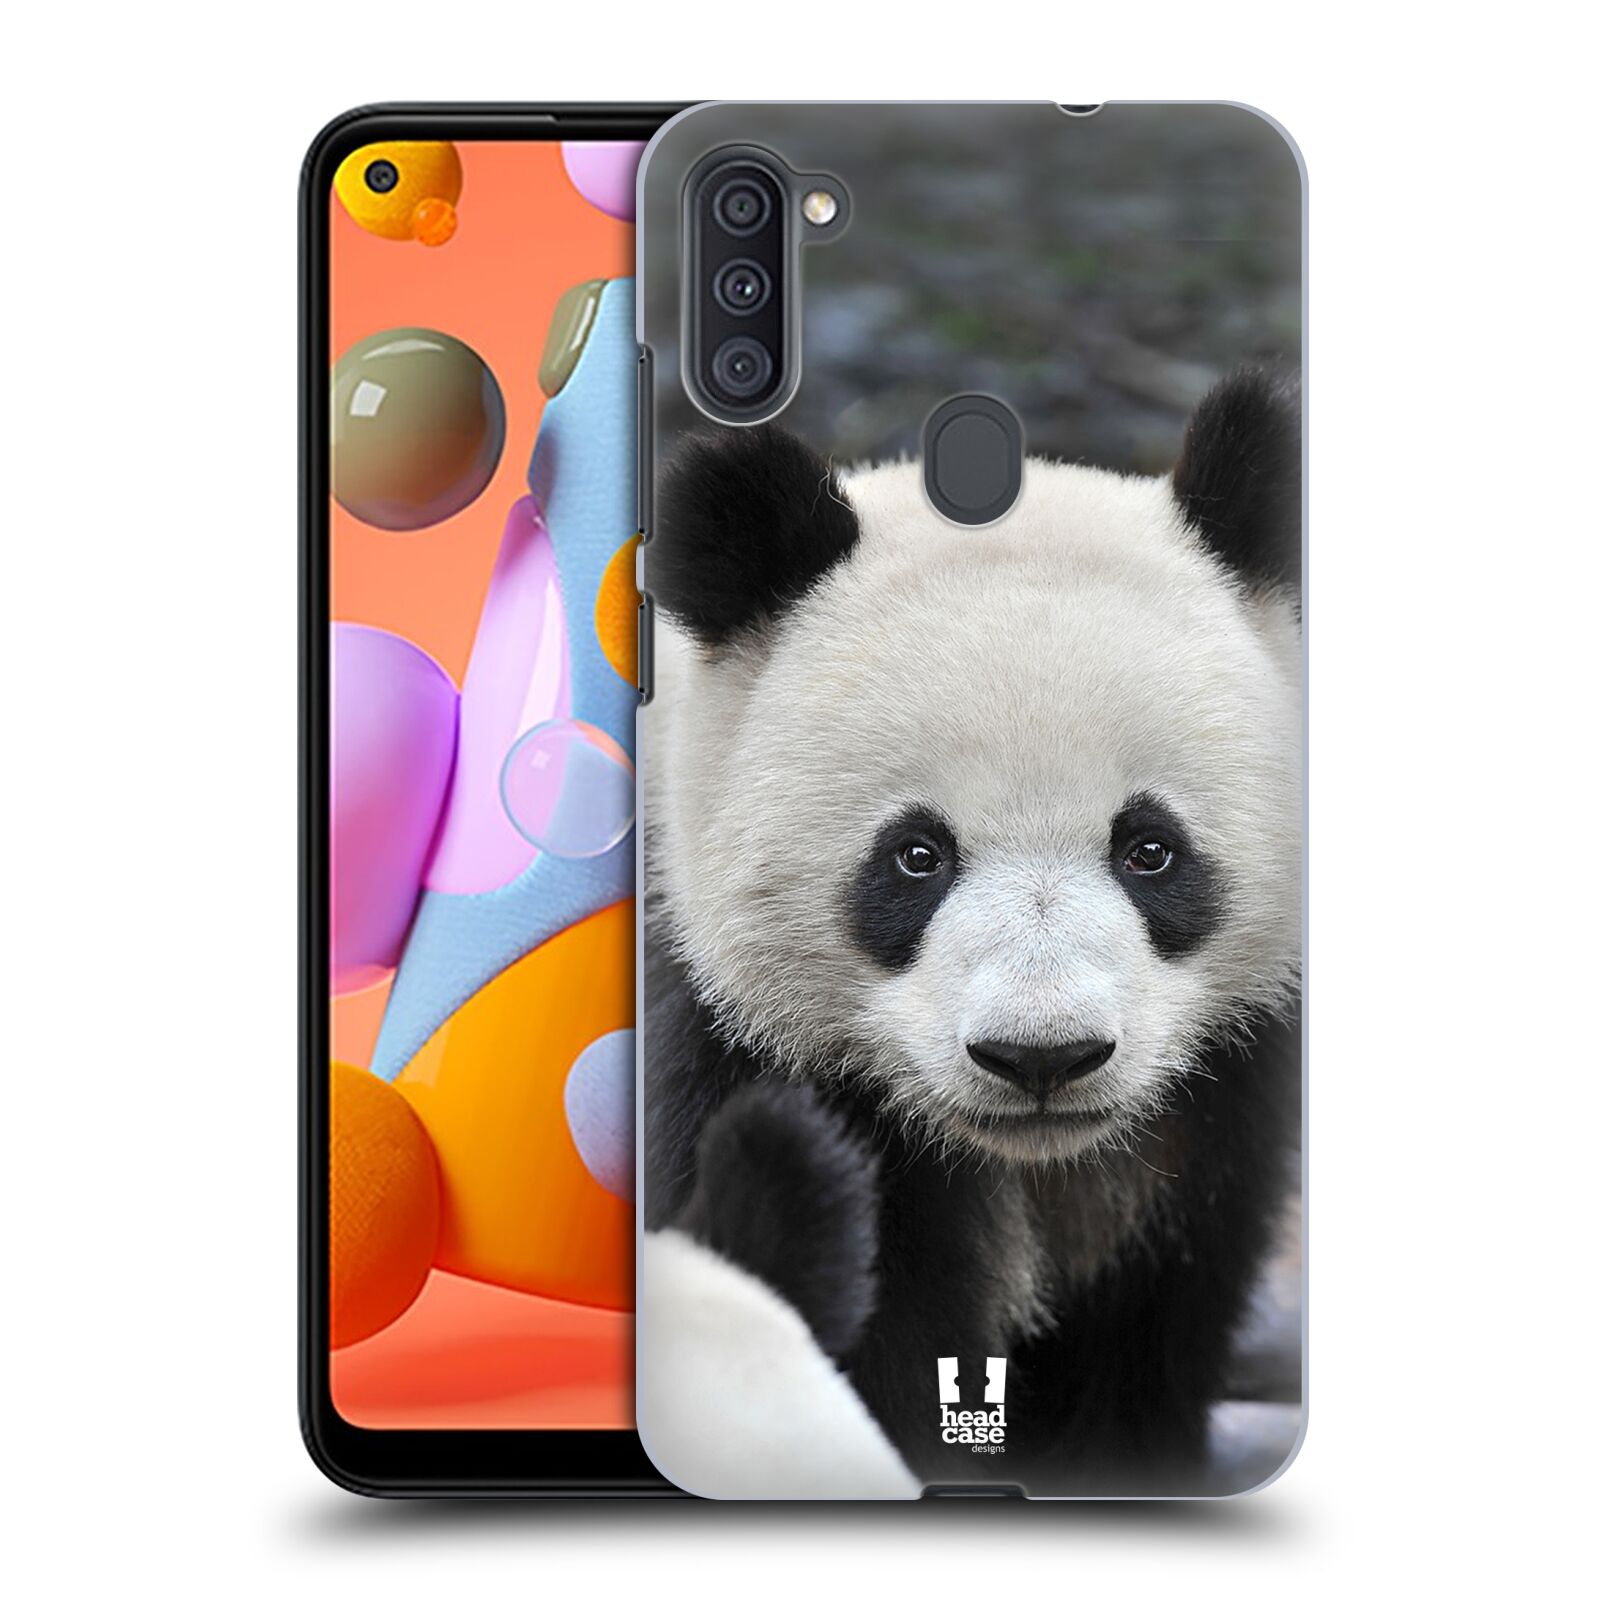 Zadní obal pro mobil Samsung Galaxy A11 - HEAD CASE - Svět zvířat medvěd panda